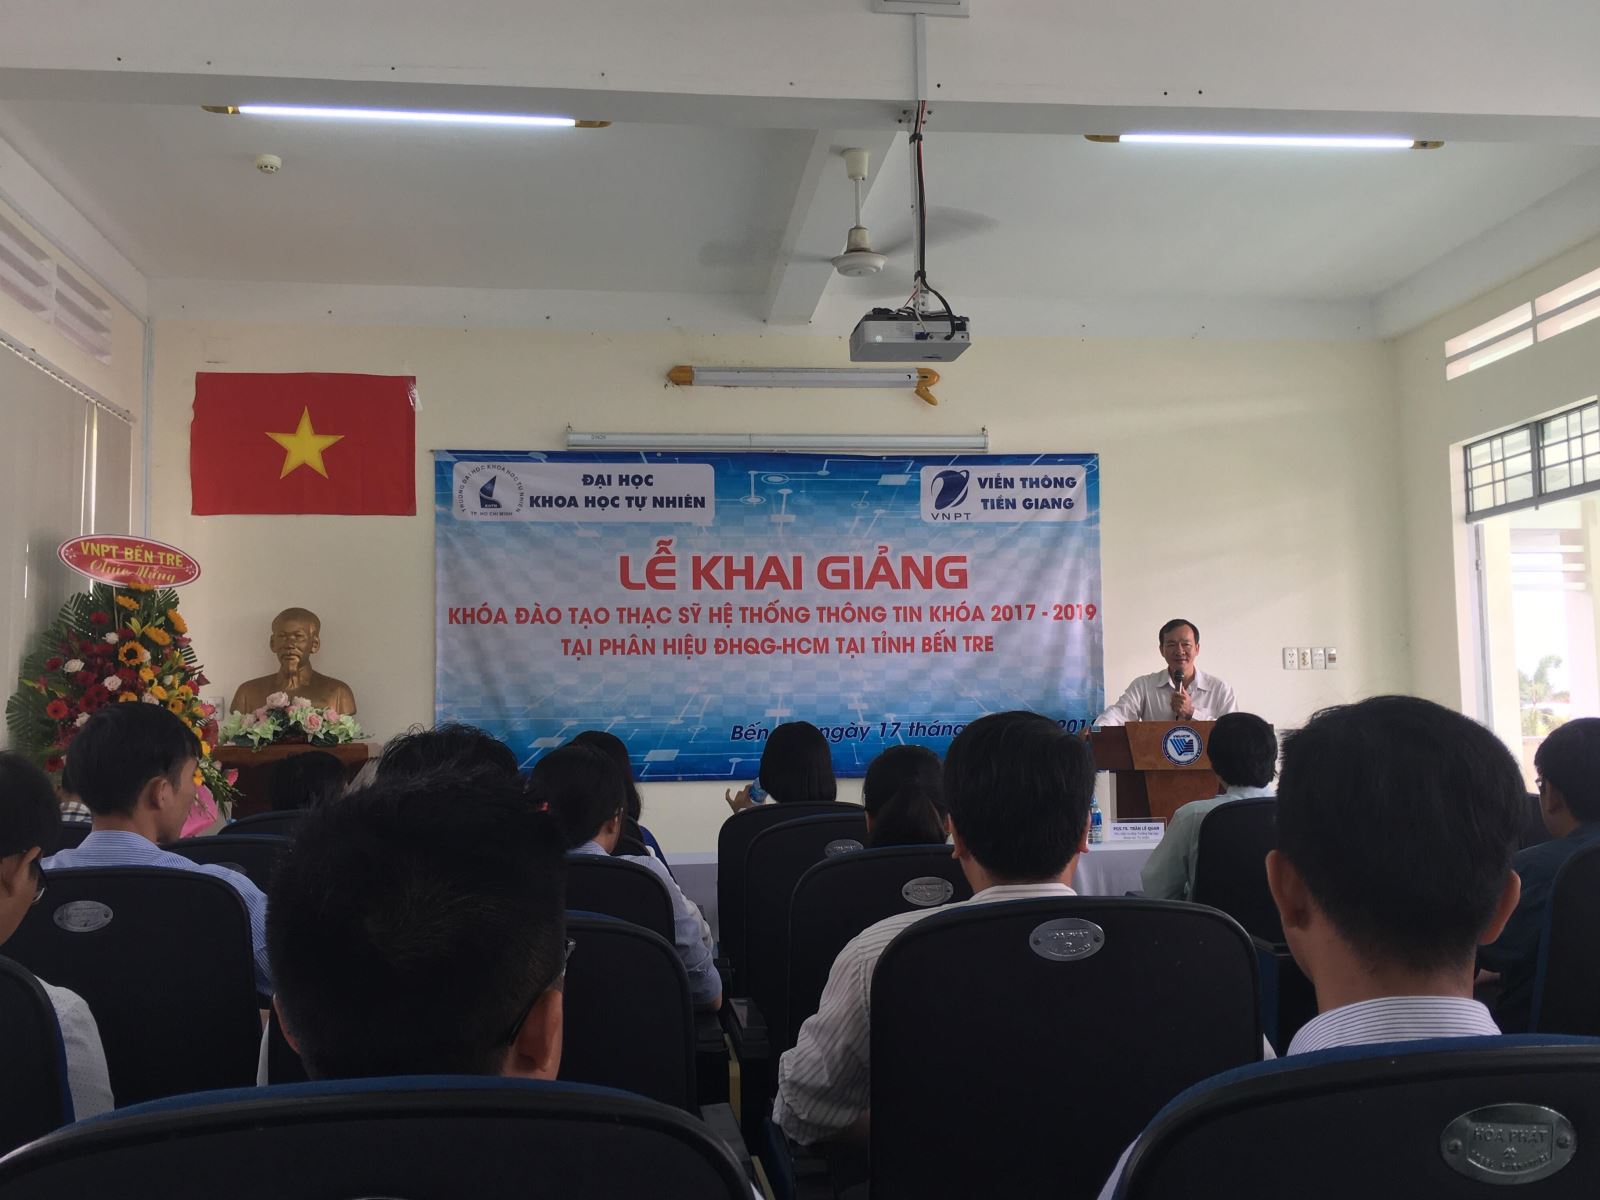 Lễ Khai giảng Khóa đào tạo Thạc sỹ Hệ thống thông tin Khóa 2017 - 2019 tại Phân hiệu ĐHQG-HCM tại tỉnh Bến Tre